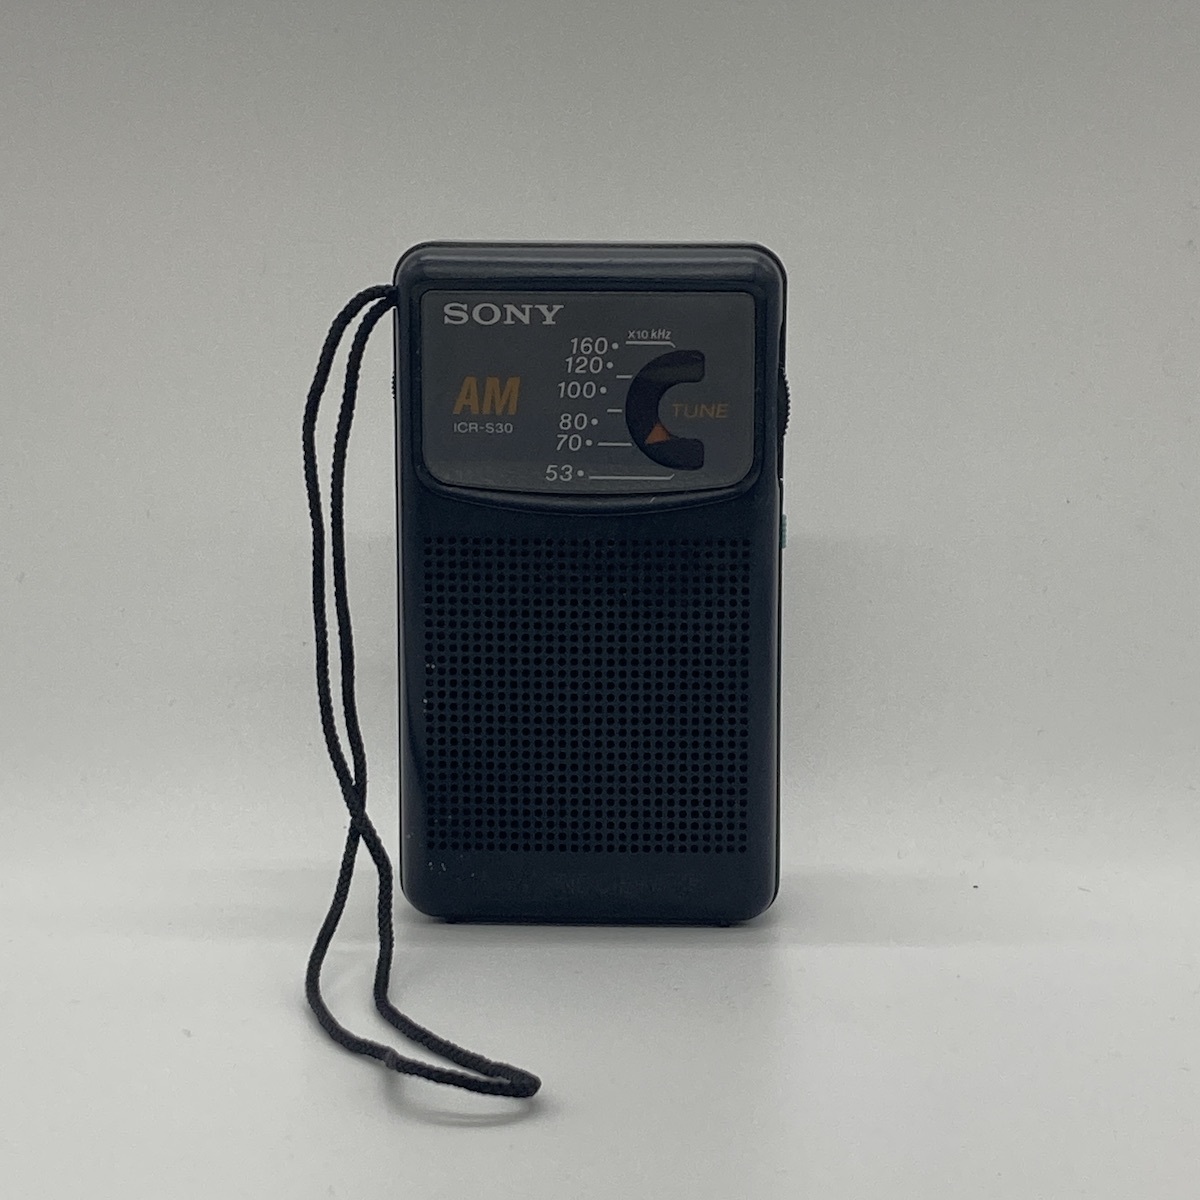 ヤフオク! -「s30」(ラジオ) (オーディオ機器)の落札相場・落札価格